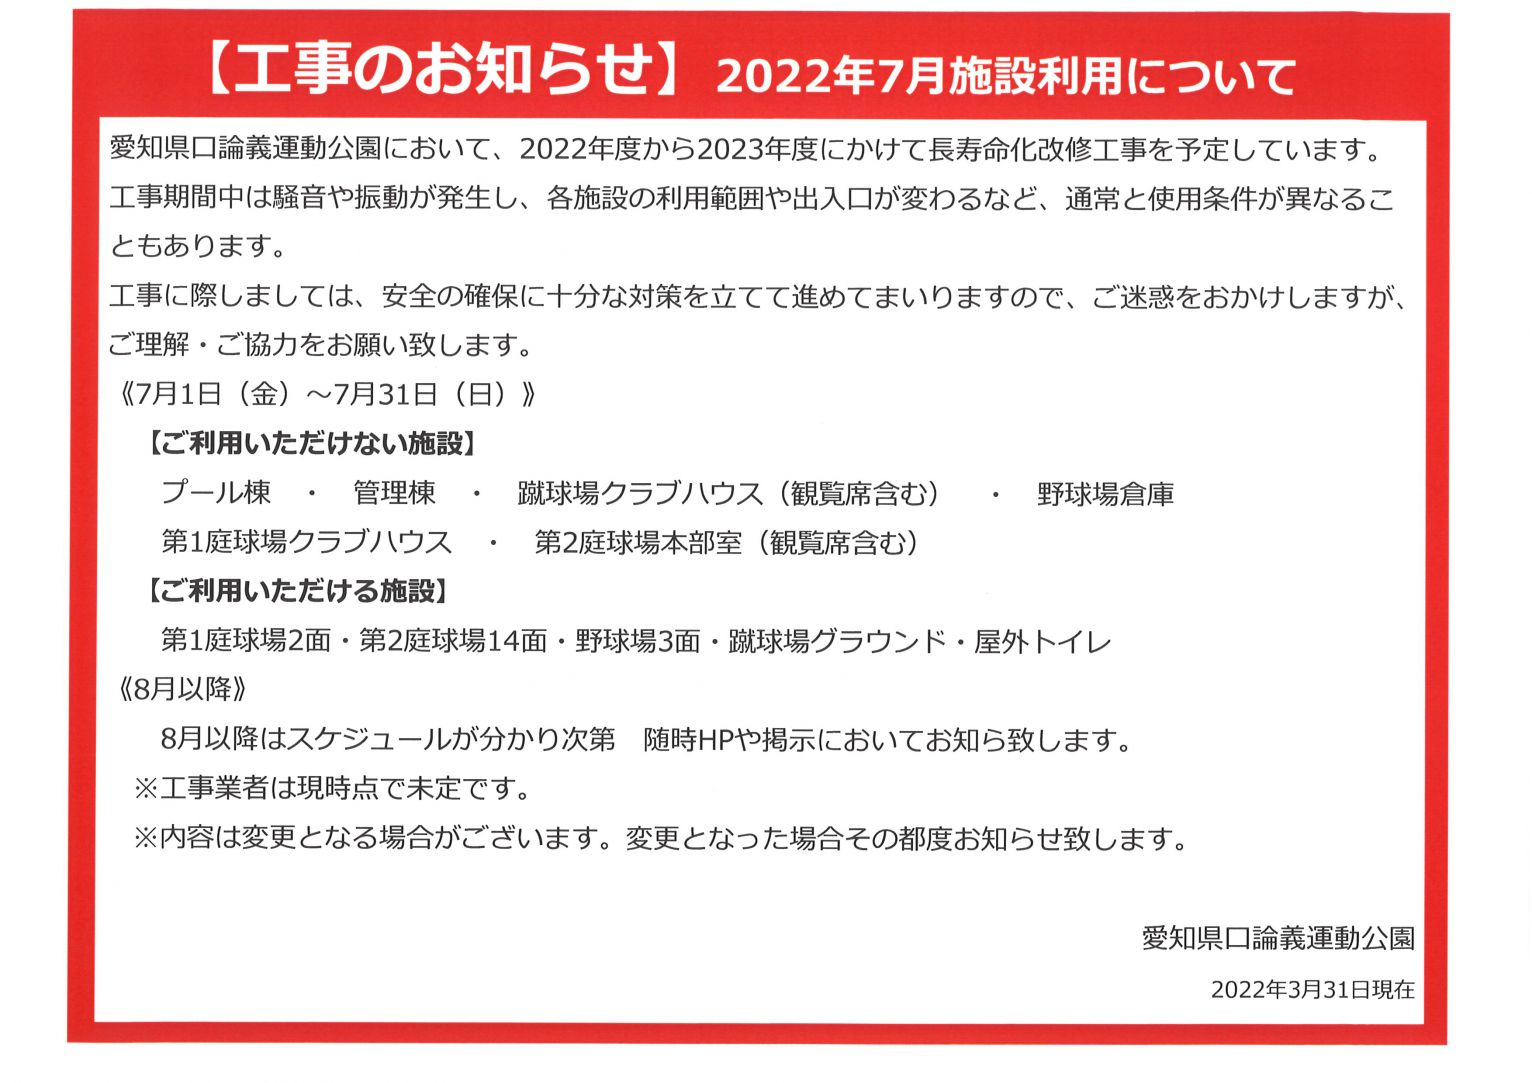 【工事のお知らせ】2022年7月施設利用について